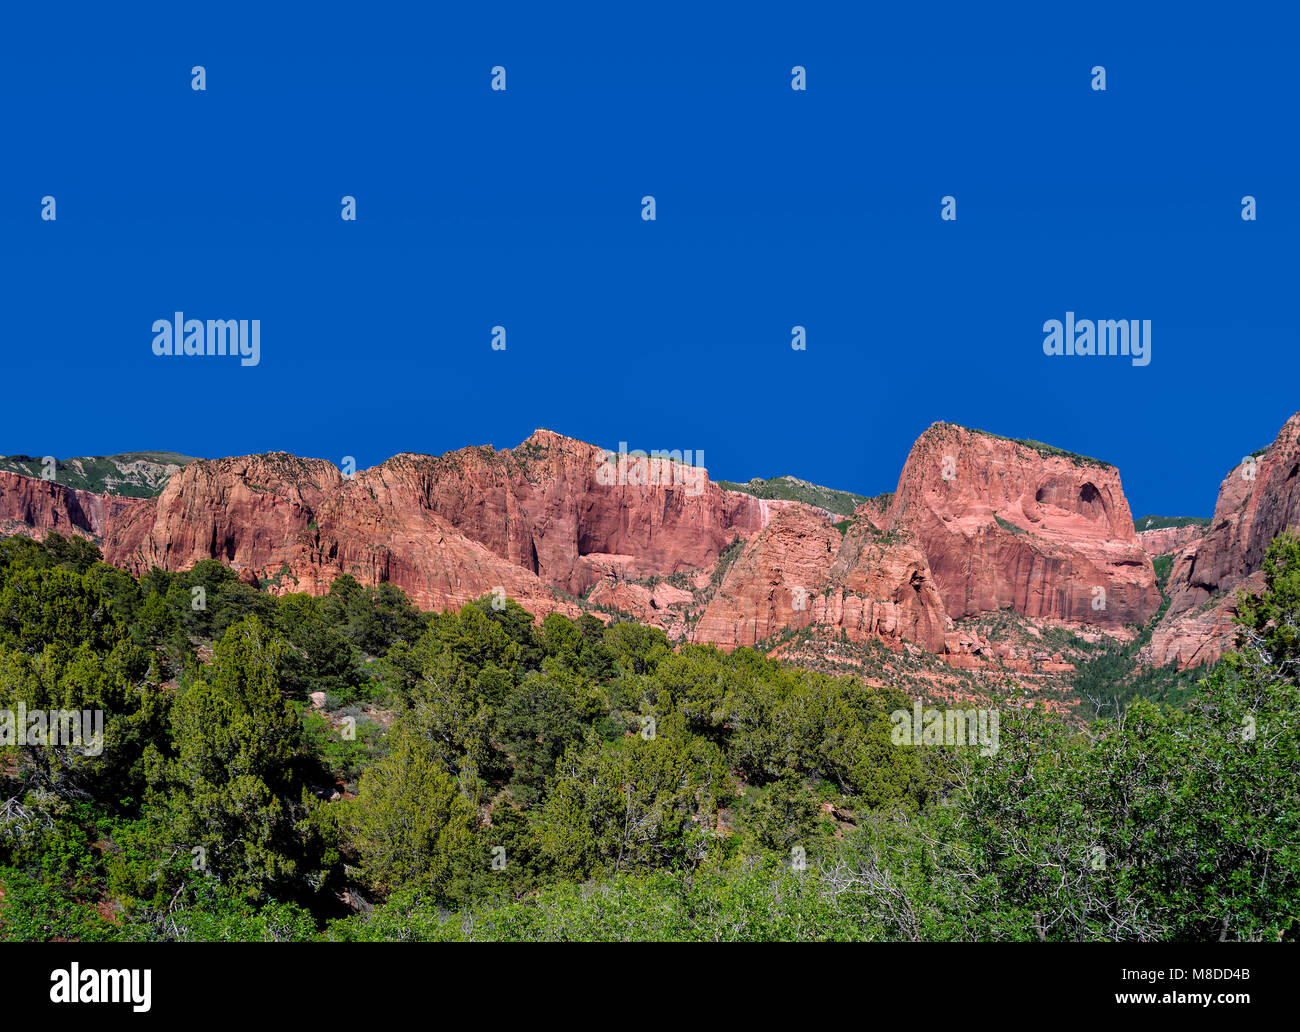 New Scenic 5 posti si affacciano a Sion Kolob canyon, nel sud-ovest dello Utah. Cielo blu, verde, rosso montagne di arenaria. Foto Stock